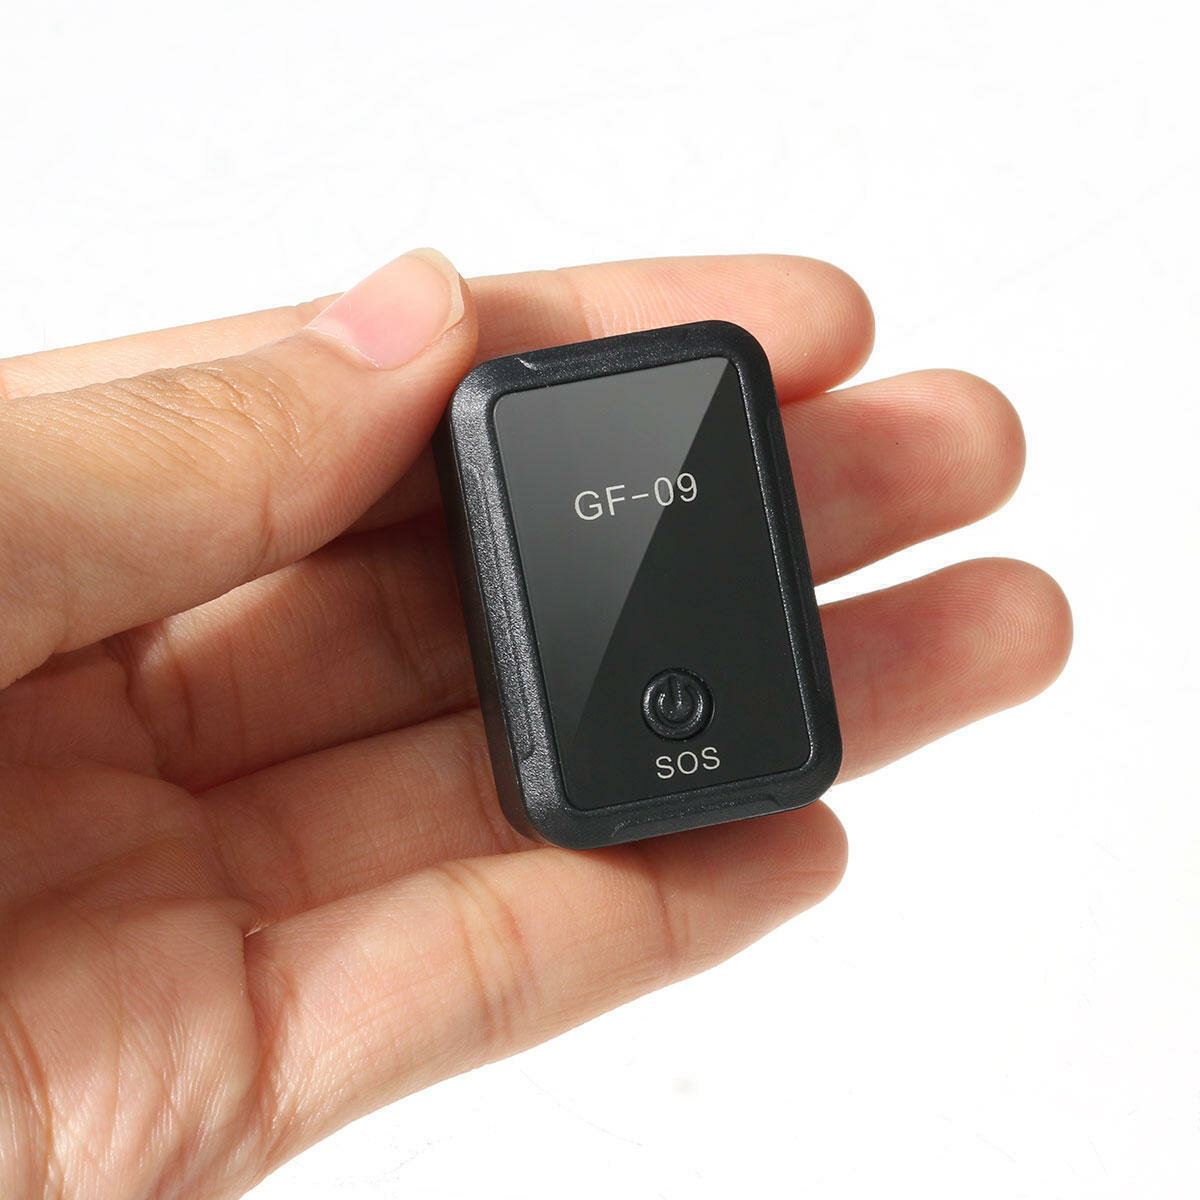 Магнитный GSM/GPS трекер-маяк GF-09 для отслеживания собак детей автомобилей с приложением на телефон (android и ios)